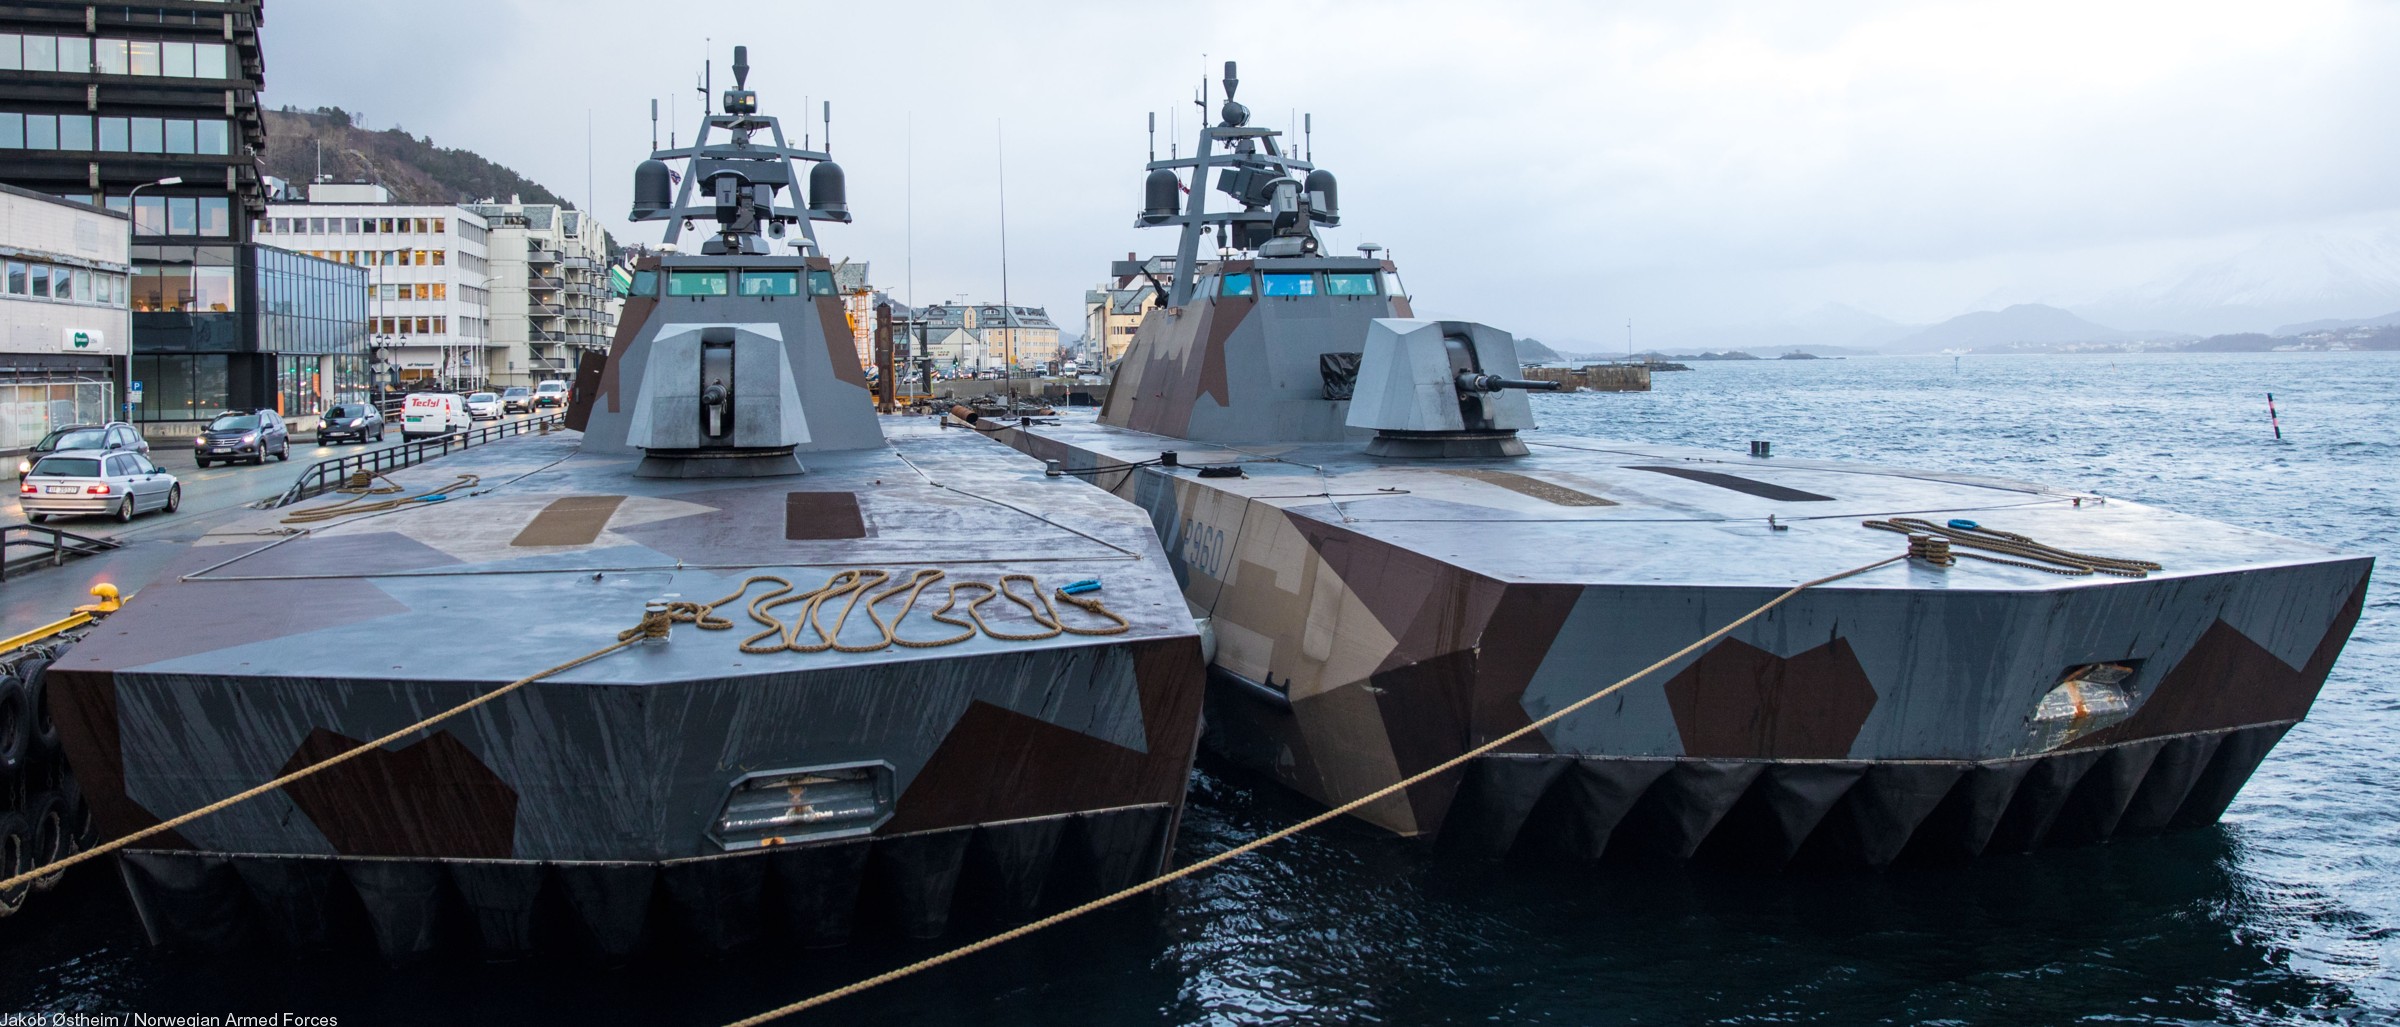 skjold class corvette knm hnoms royal norwegian navy sjoforsvaret 04